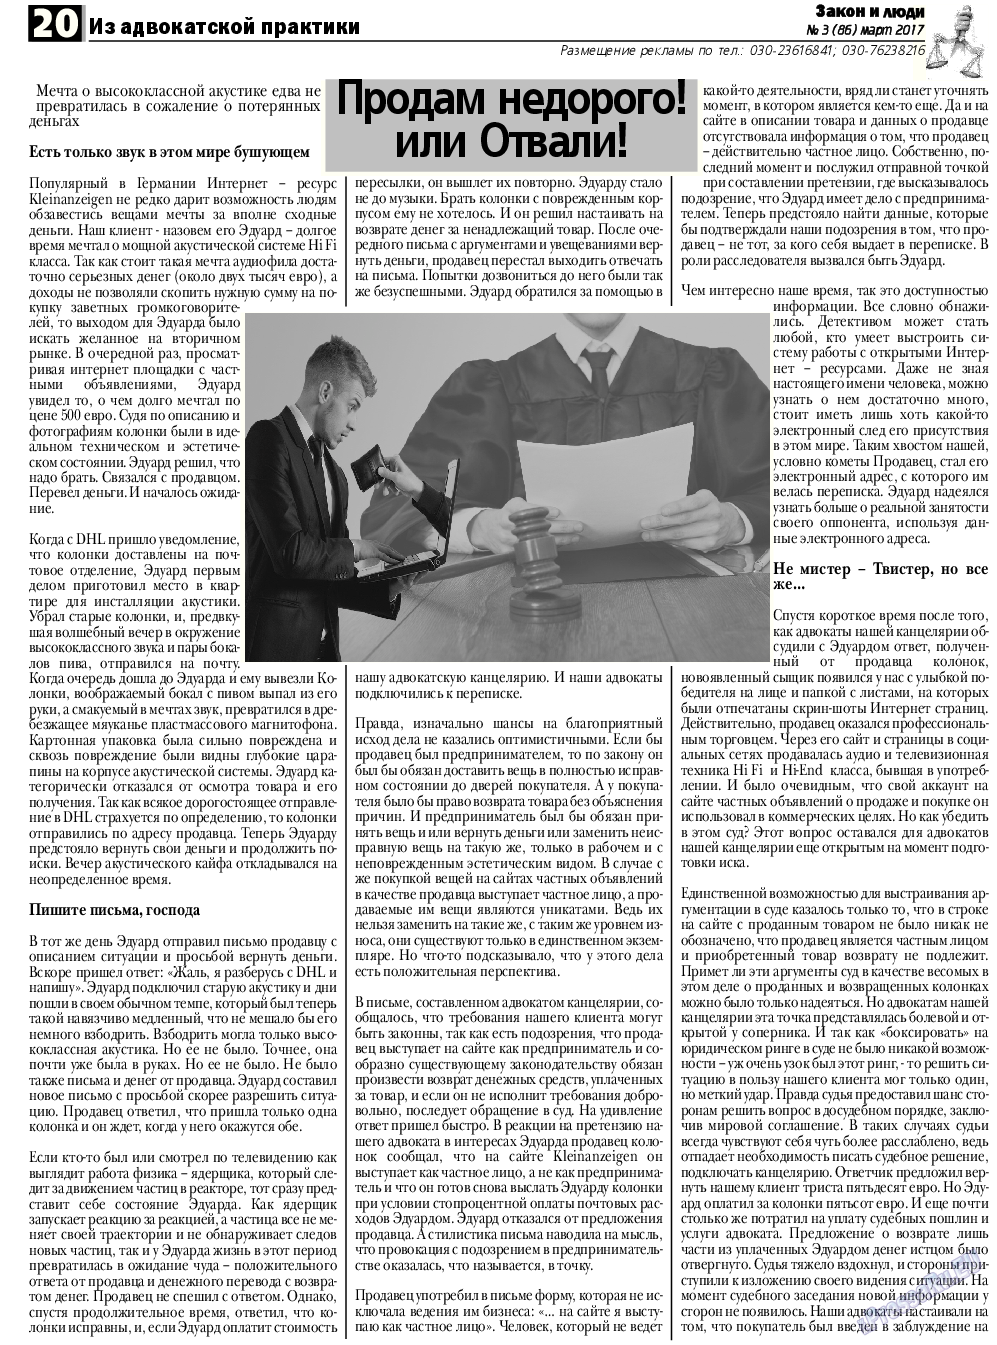 Закон и люди, газета. 2017 №3 стр.20